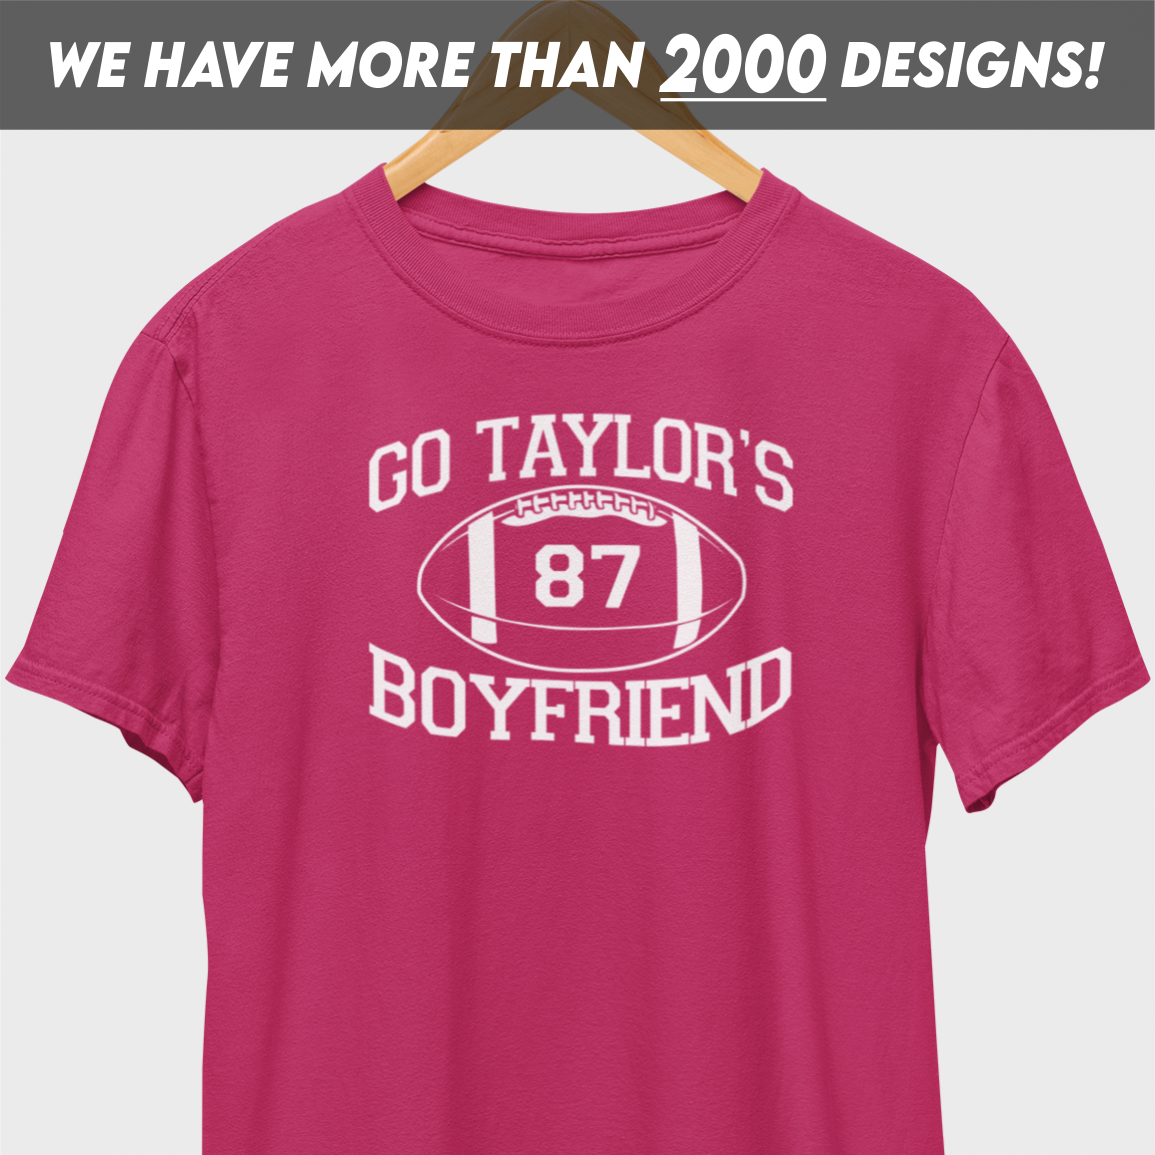 Go Taylor's Boyfriend White Print T-Shirt